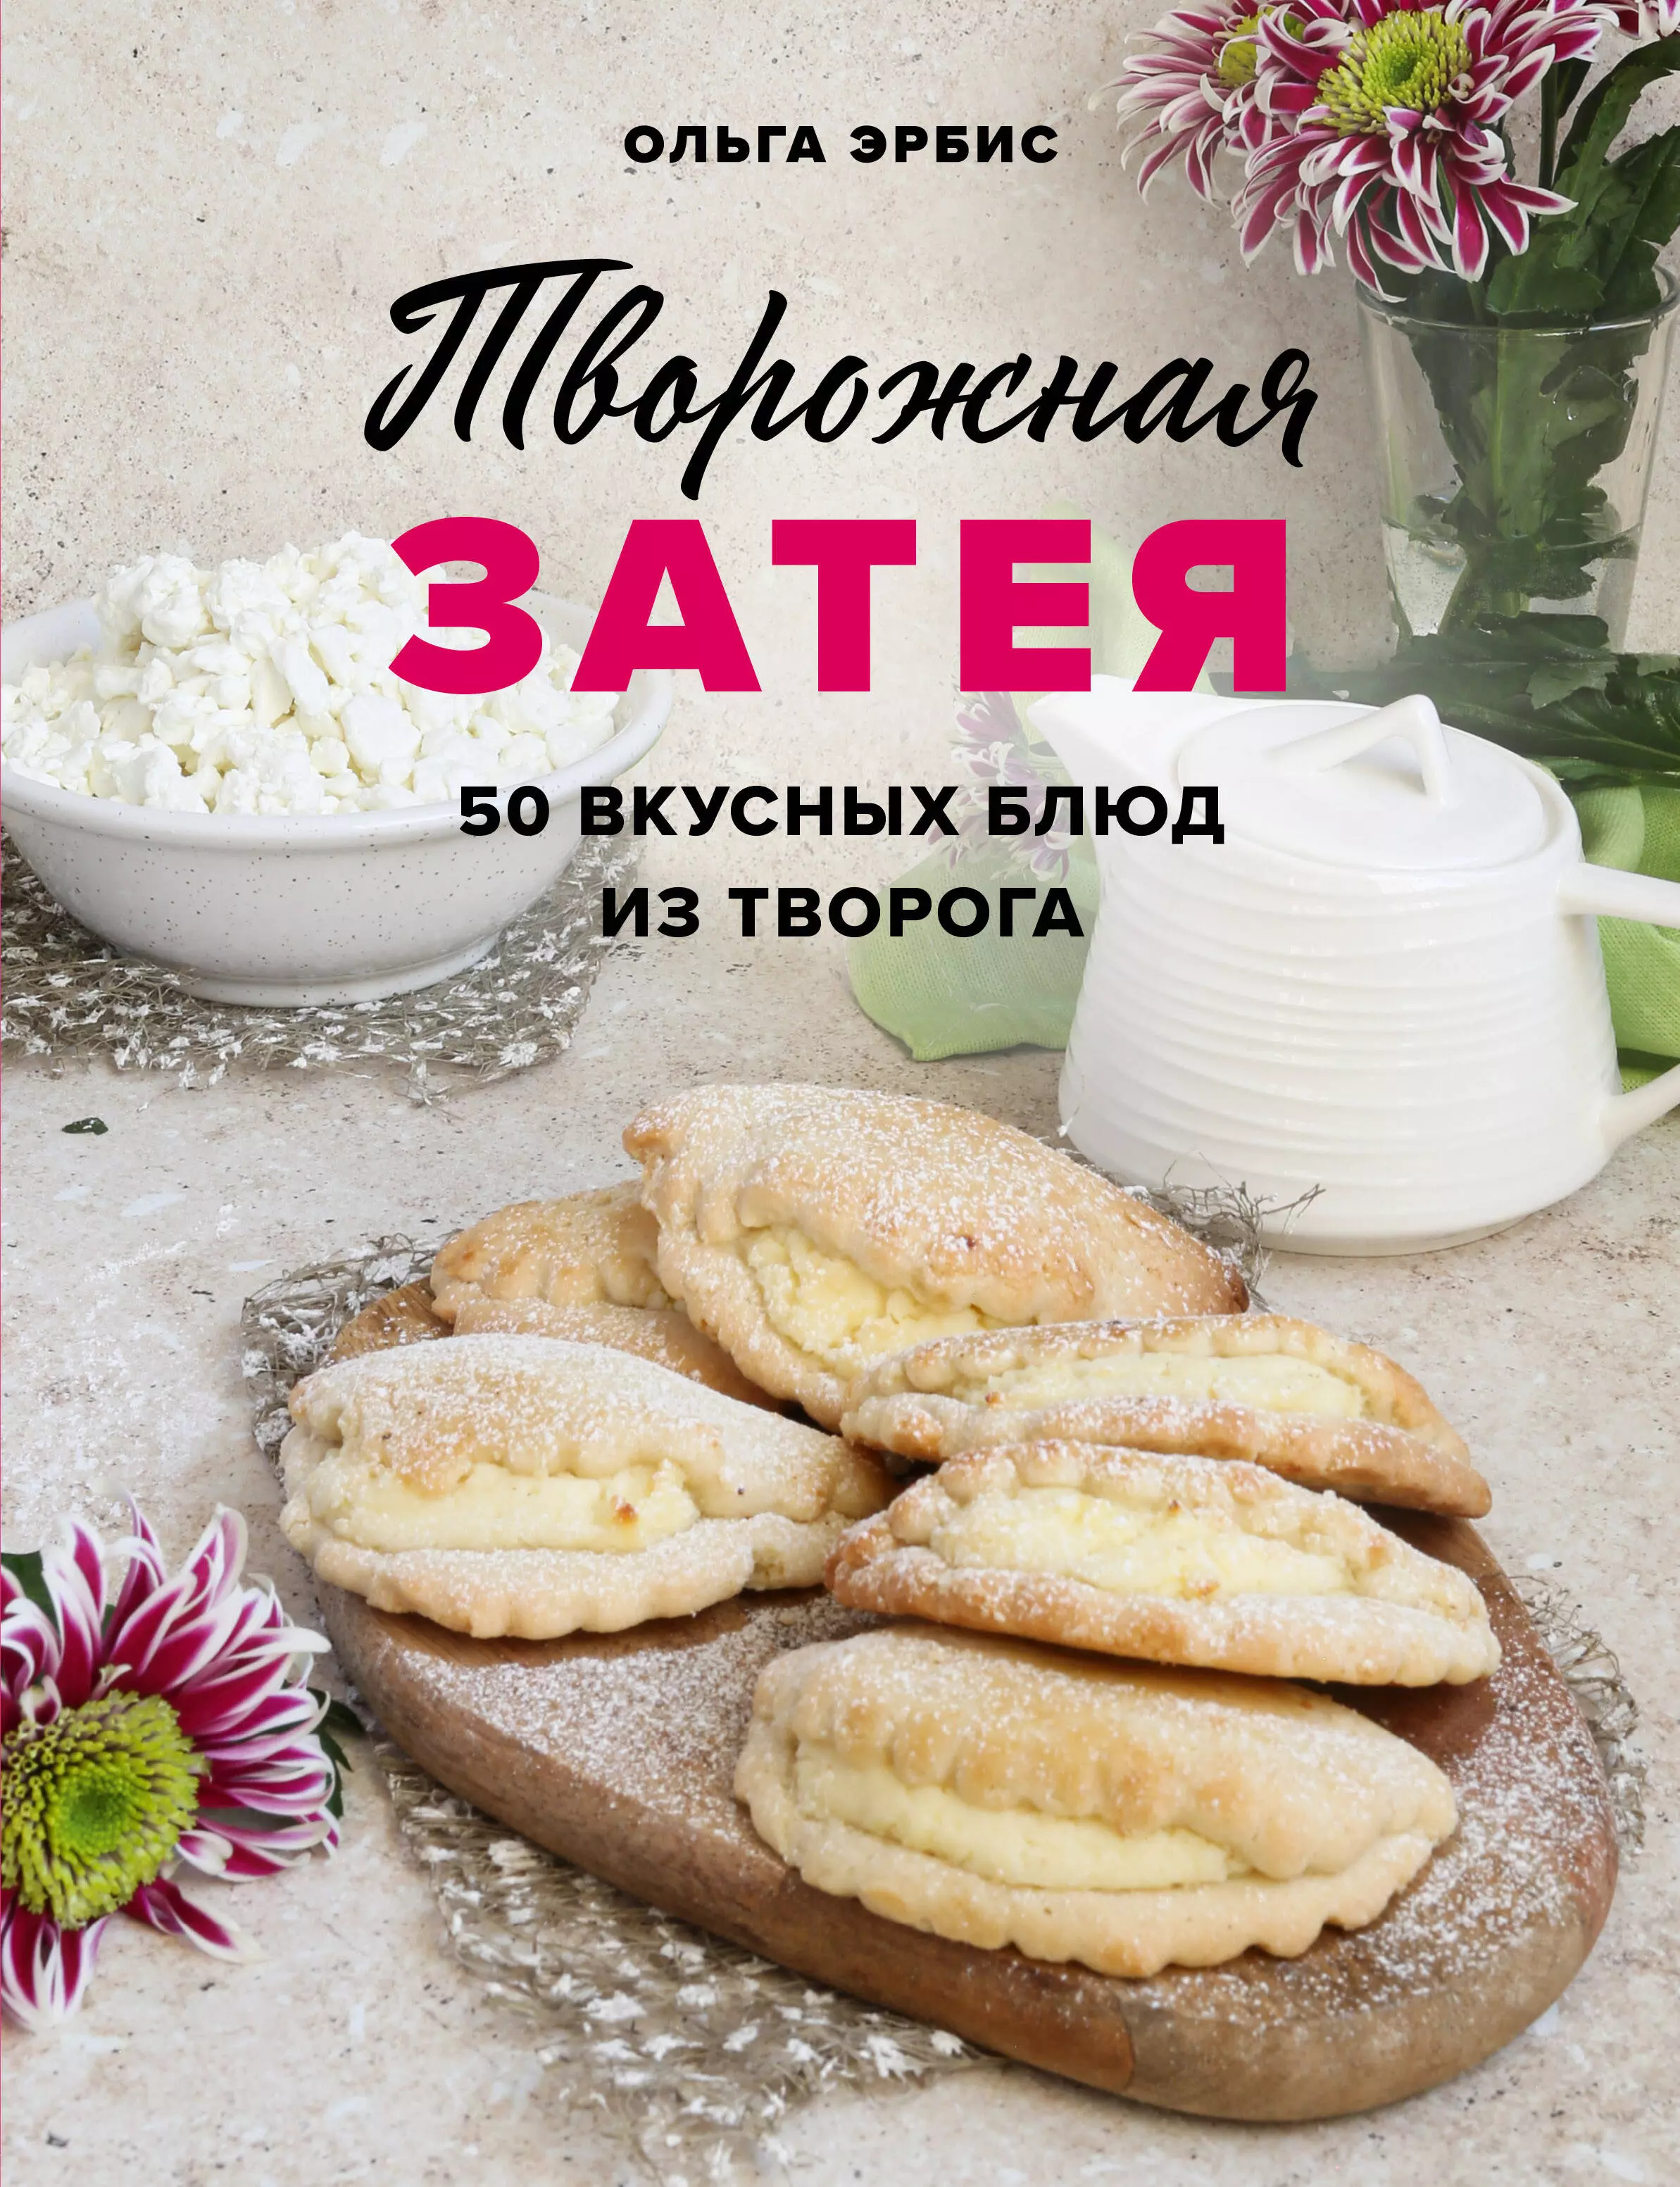 Эрбис Ольга Александровна - Творожная затея. 50 вкусных блюд из творога